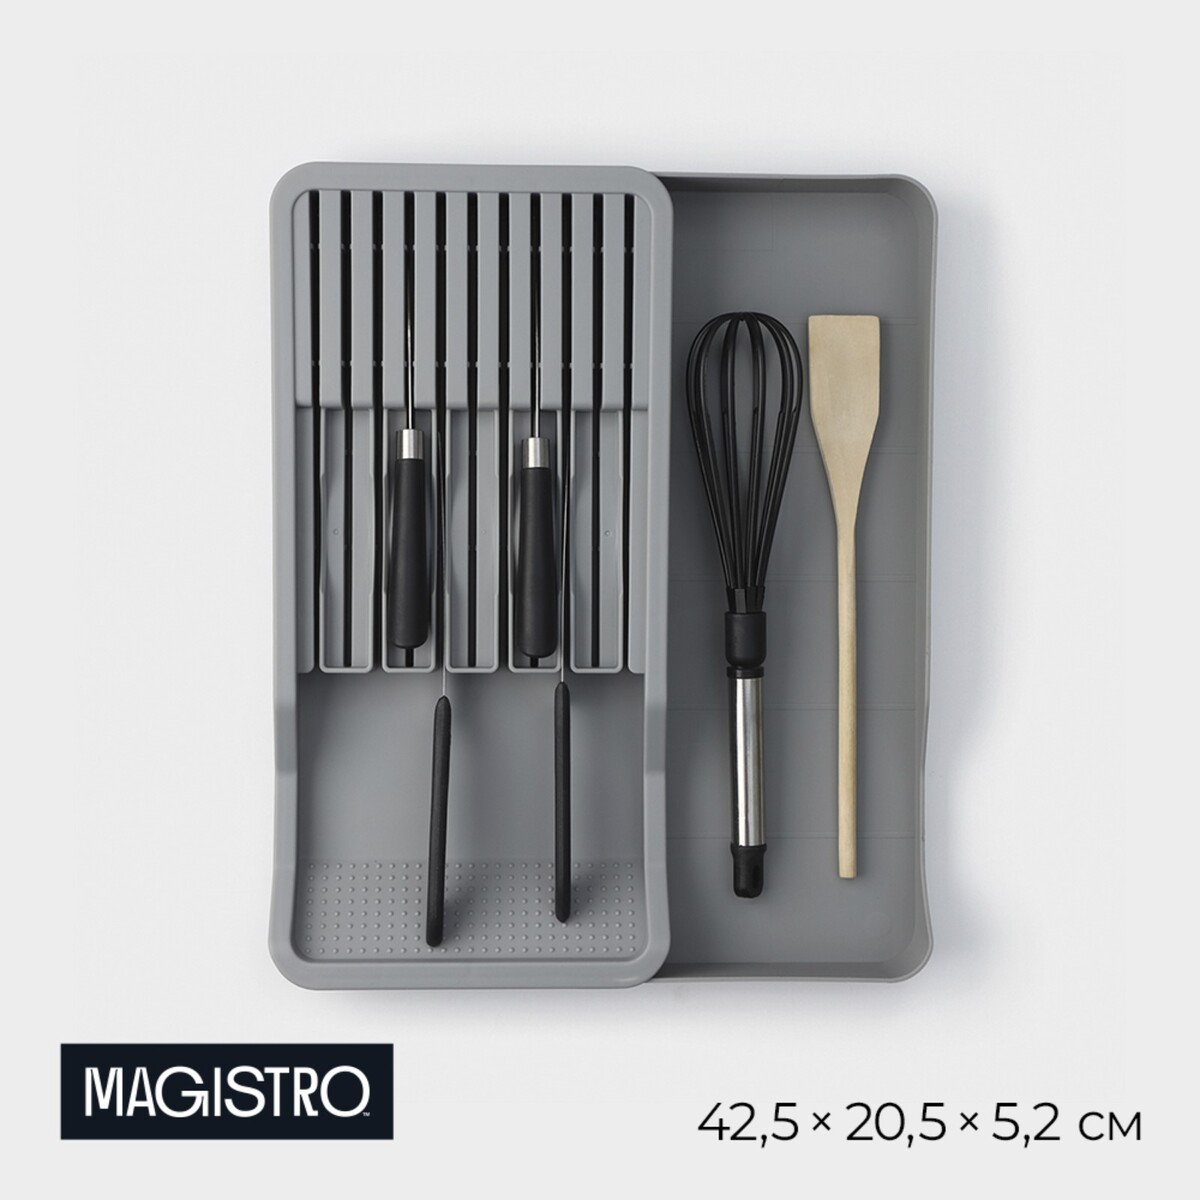 Подставка для кухонных приборов magistro harm, 42,5×20,5×5,2 см, раздвижная, цвет серый подставка круглая для ножей и ножниц magistro